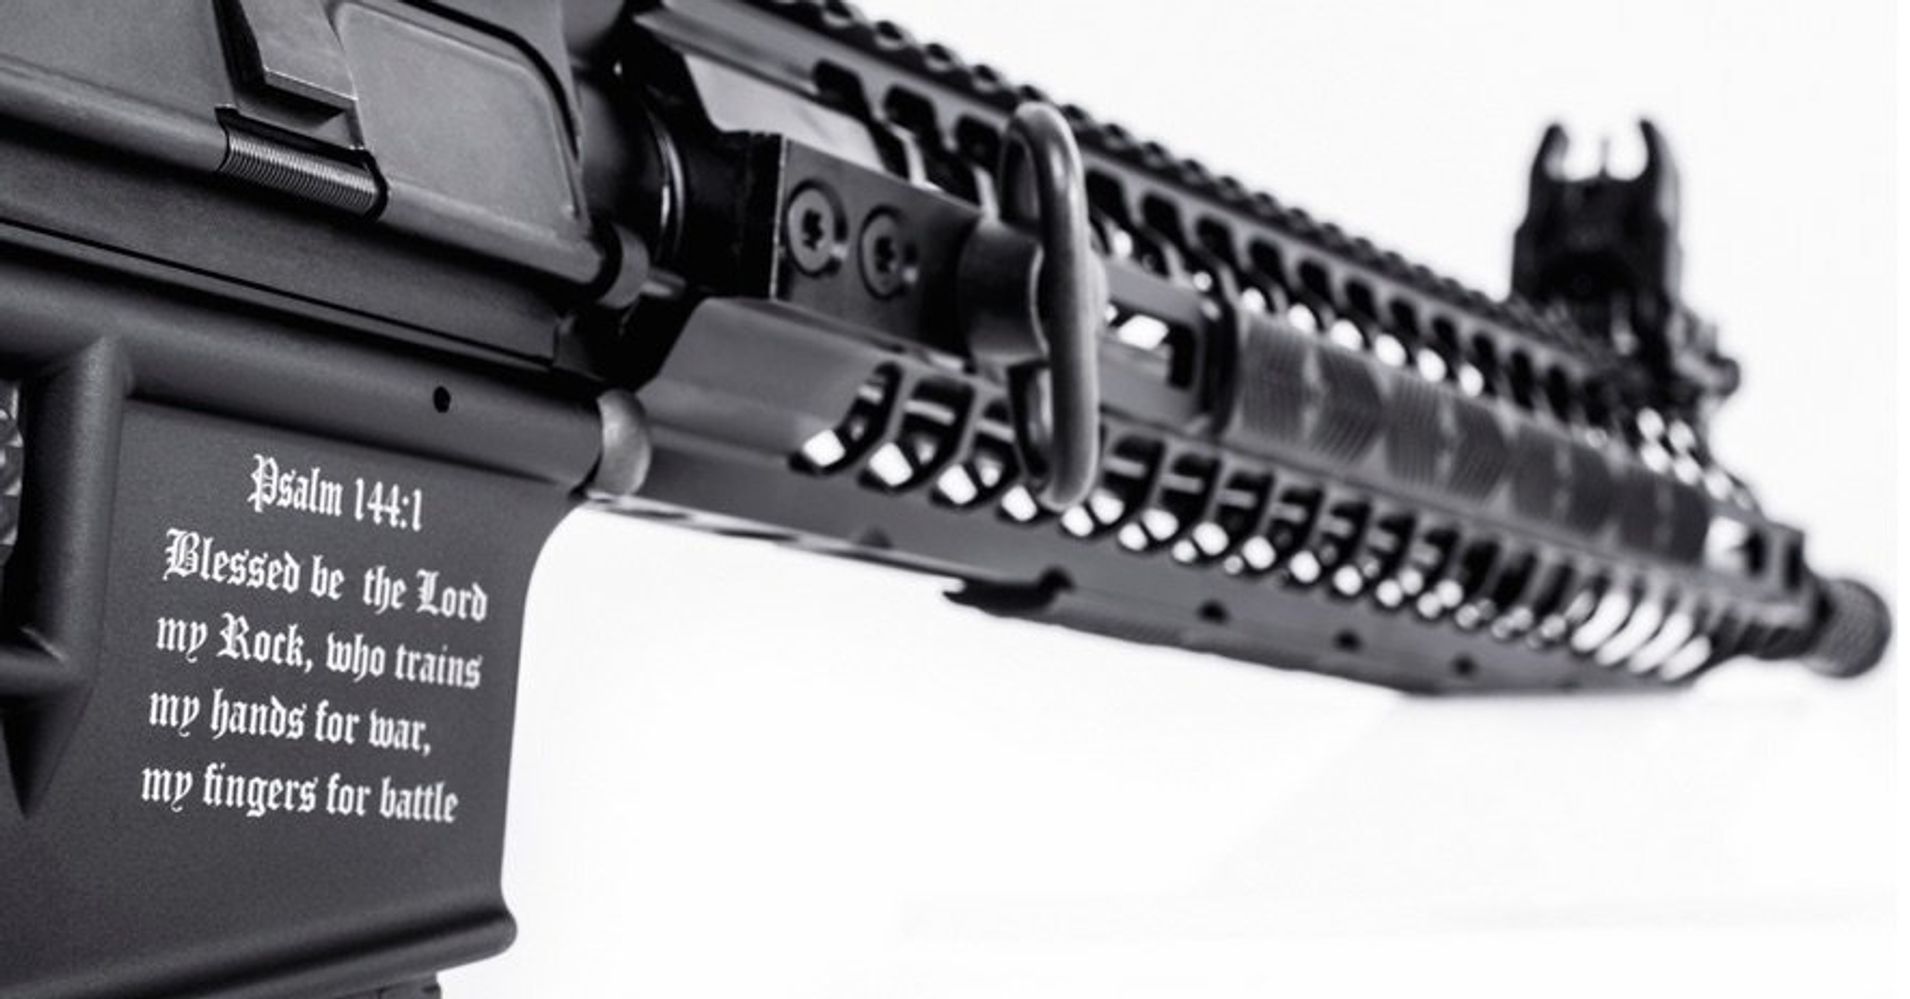 Lanzan un rifle cristiano en EEUU para evitar que caiga en manos de terroristas 55e804991700009a015695d3